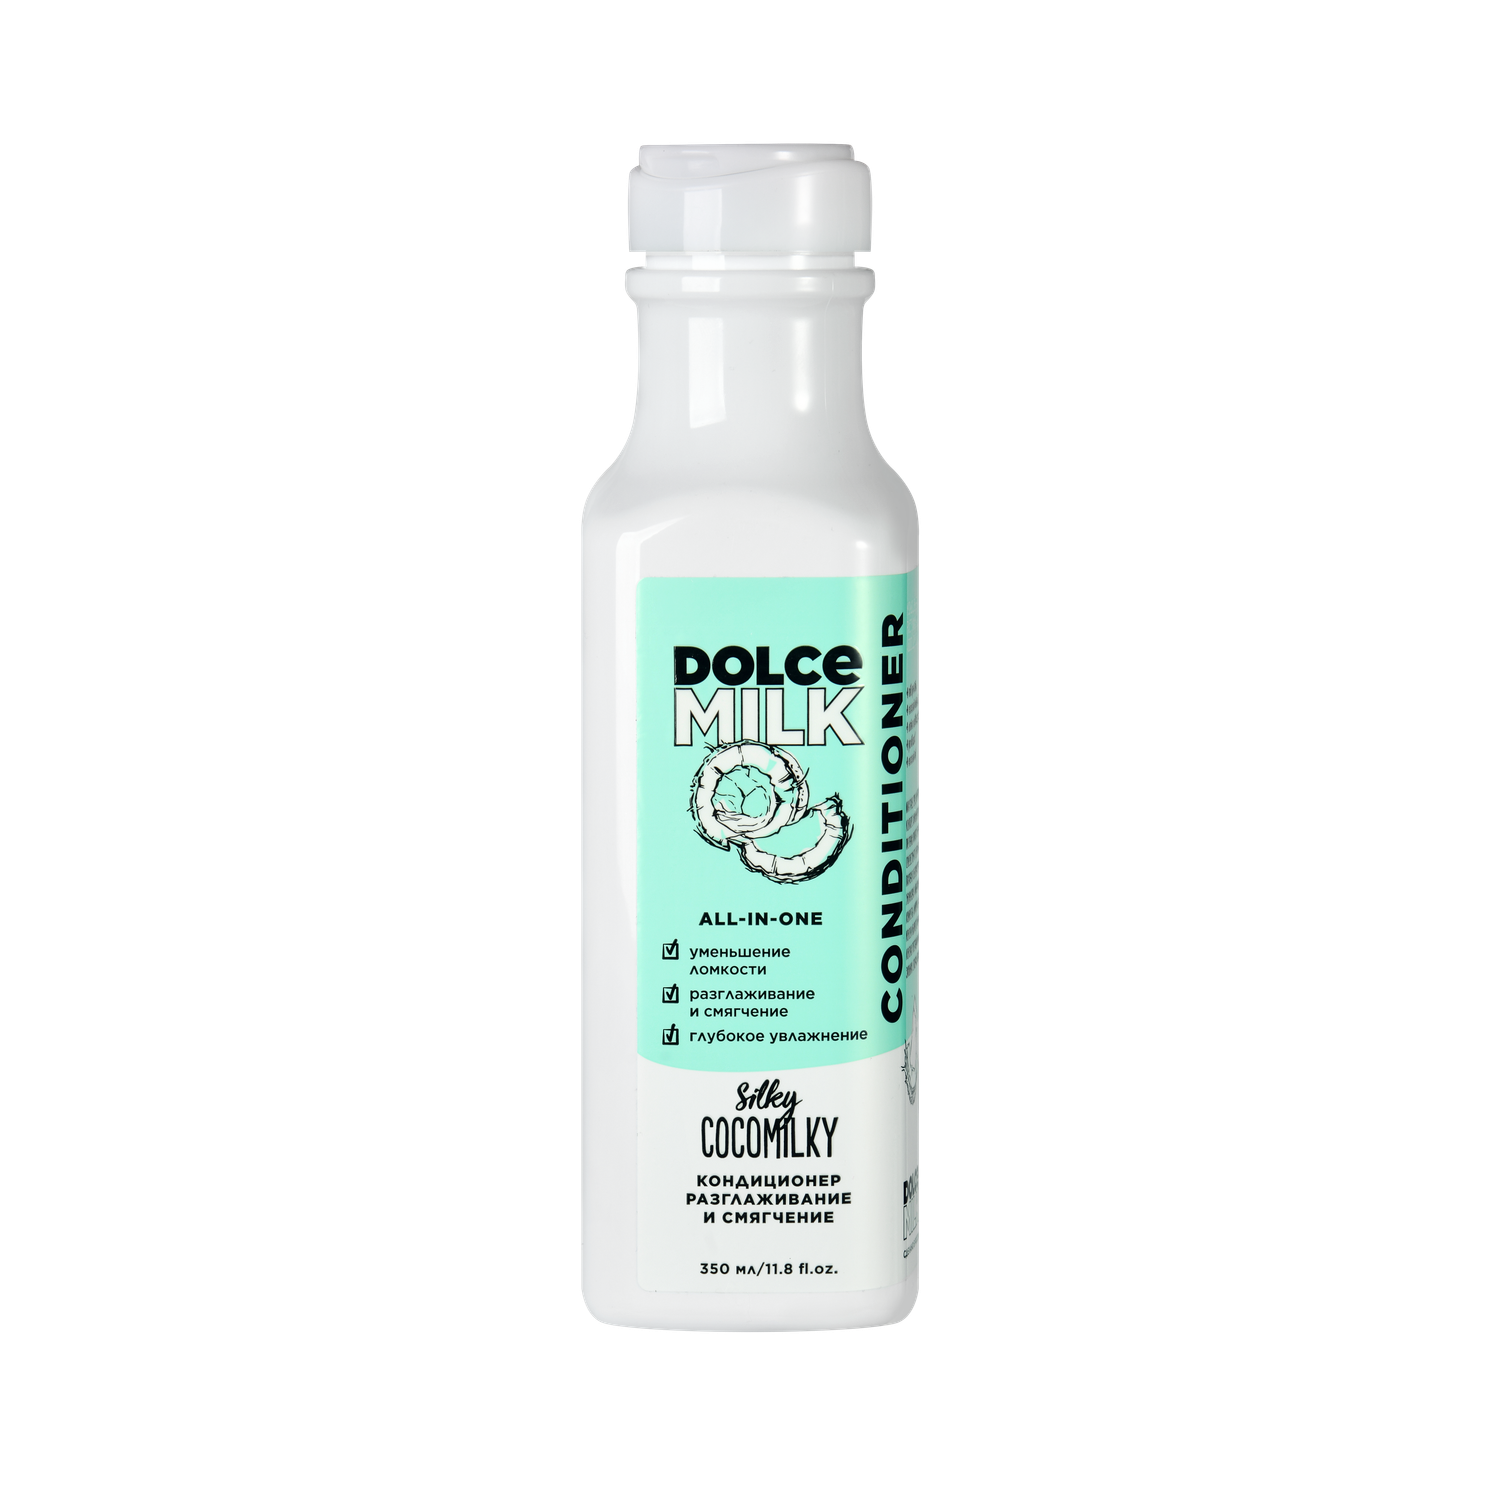 Кондиционер для волос Dolce milk Босс Шелковый Кокос 350мл CLOR20486 - фото 1